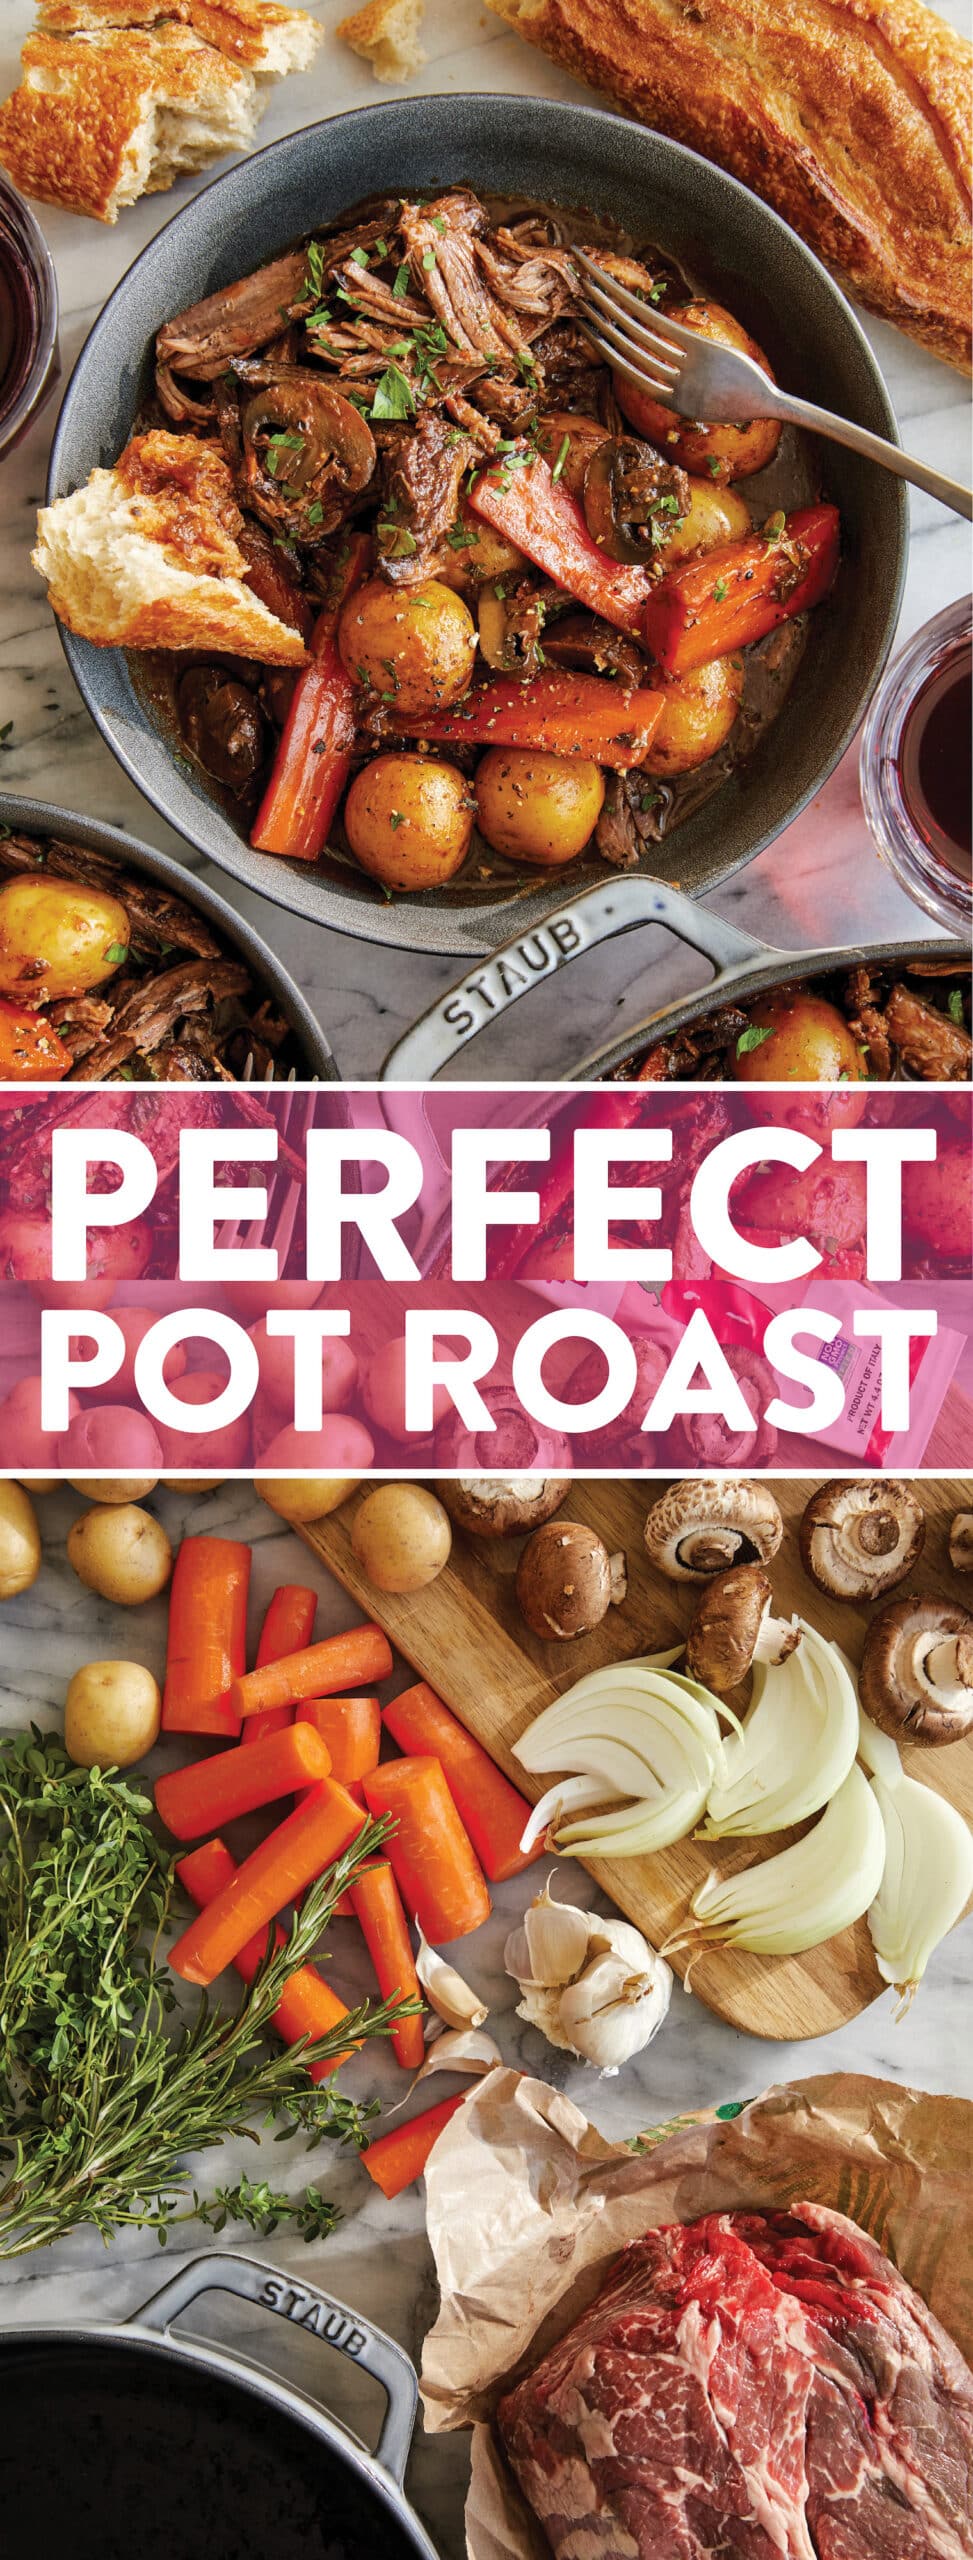 Perfect Pot Roast | LaptrinhX / News